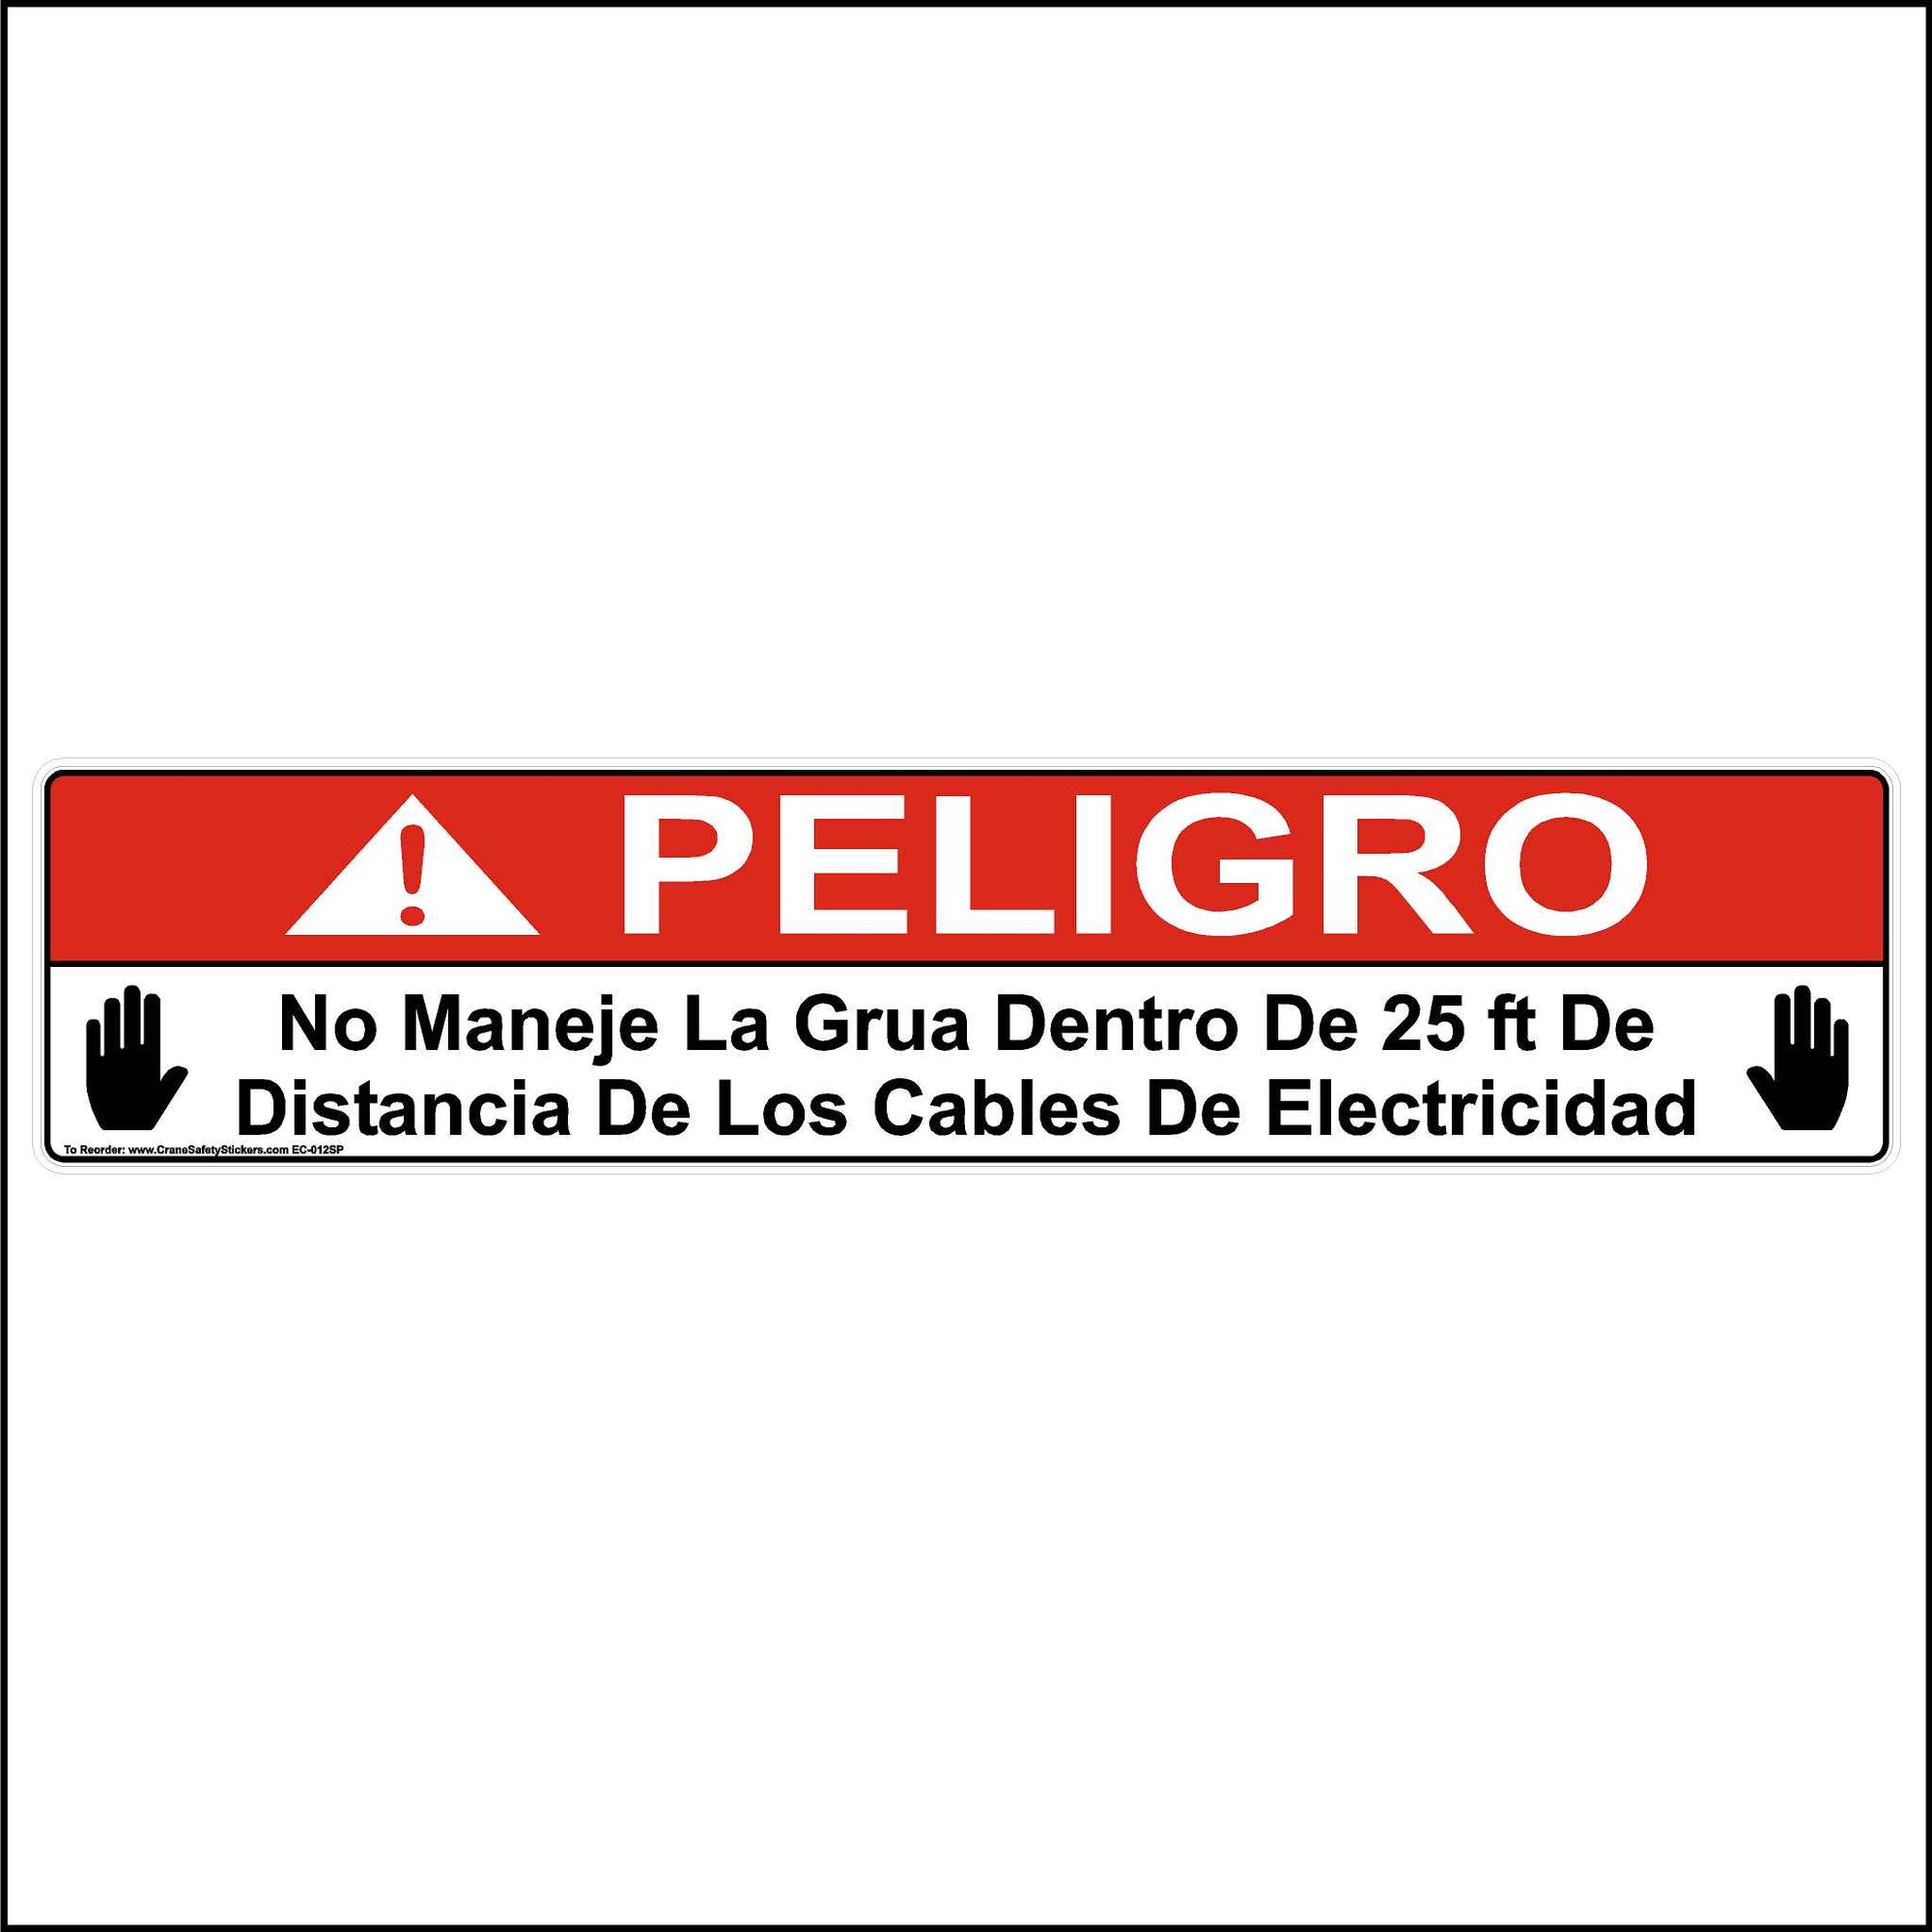 Spanish Power Line Clearance Sticker Printed With. No Maneje La Grua Dentro De 25 ft De Distancia De Los Cables De Electricidad.  "Do Not Operate Crane Within 25 Feet of Electrical Cables Sticker."